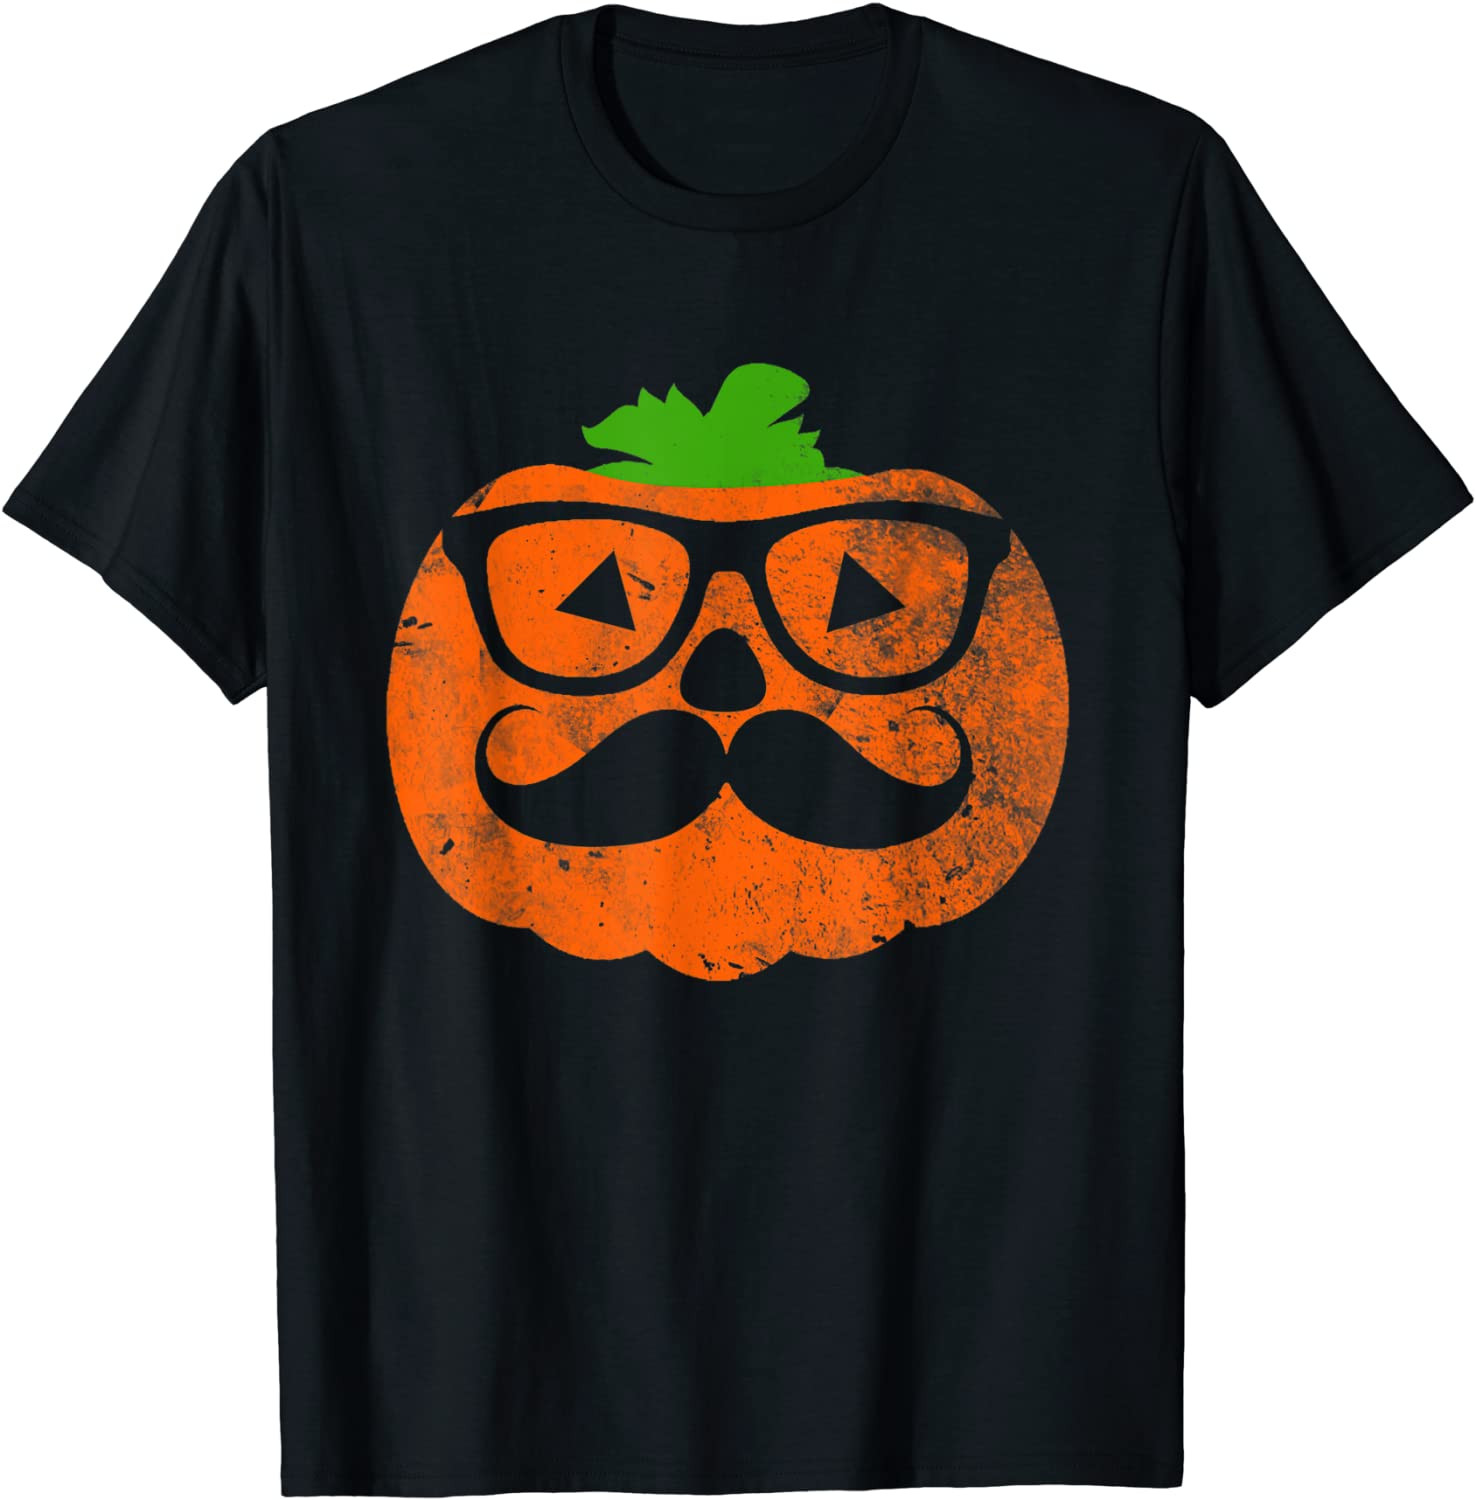 Halloween Nerd Geek Pumpkin With Mustache Wearing Glasses T-Shirt